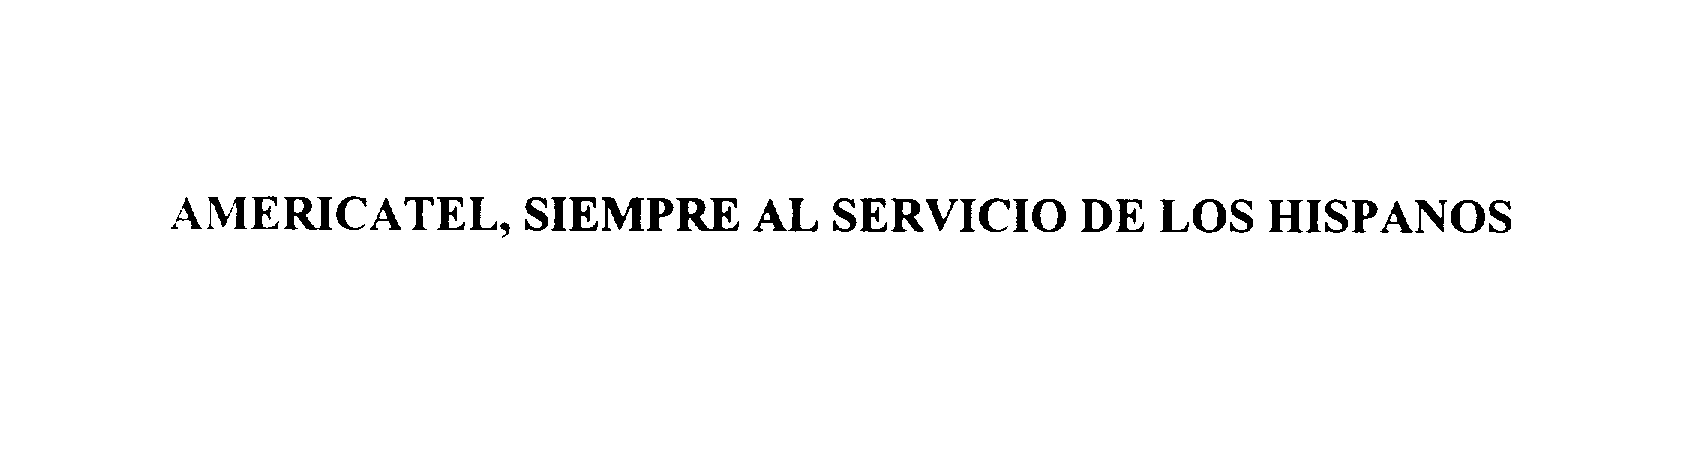  AMERICATEL, SIEMPRE AL SERVICIO DE LOS HISPANOS